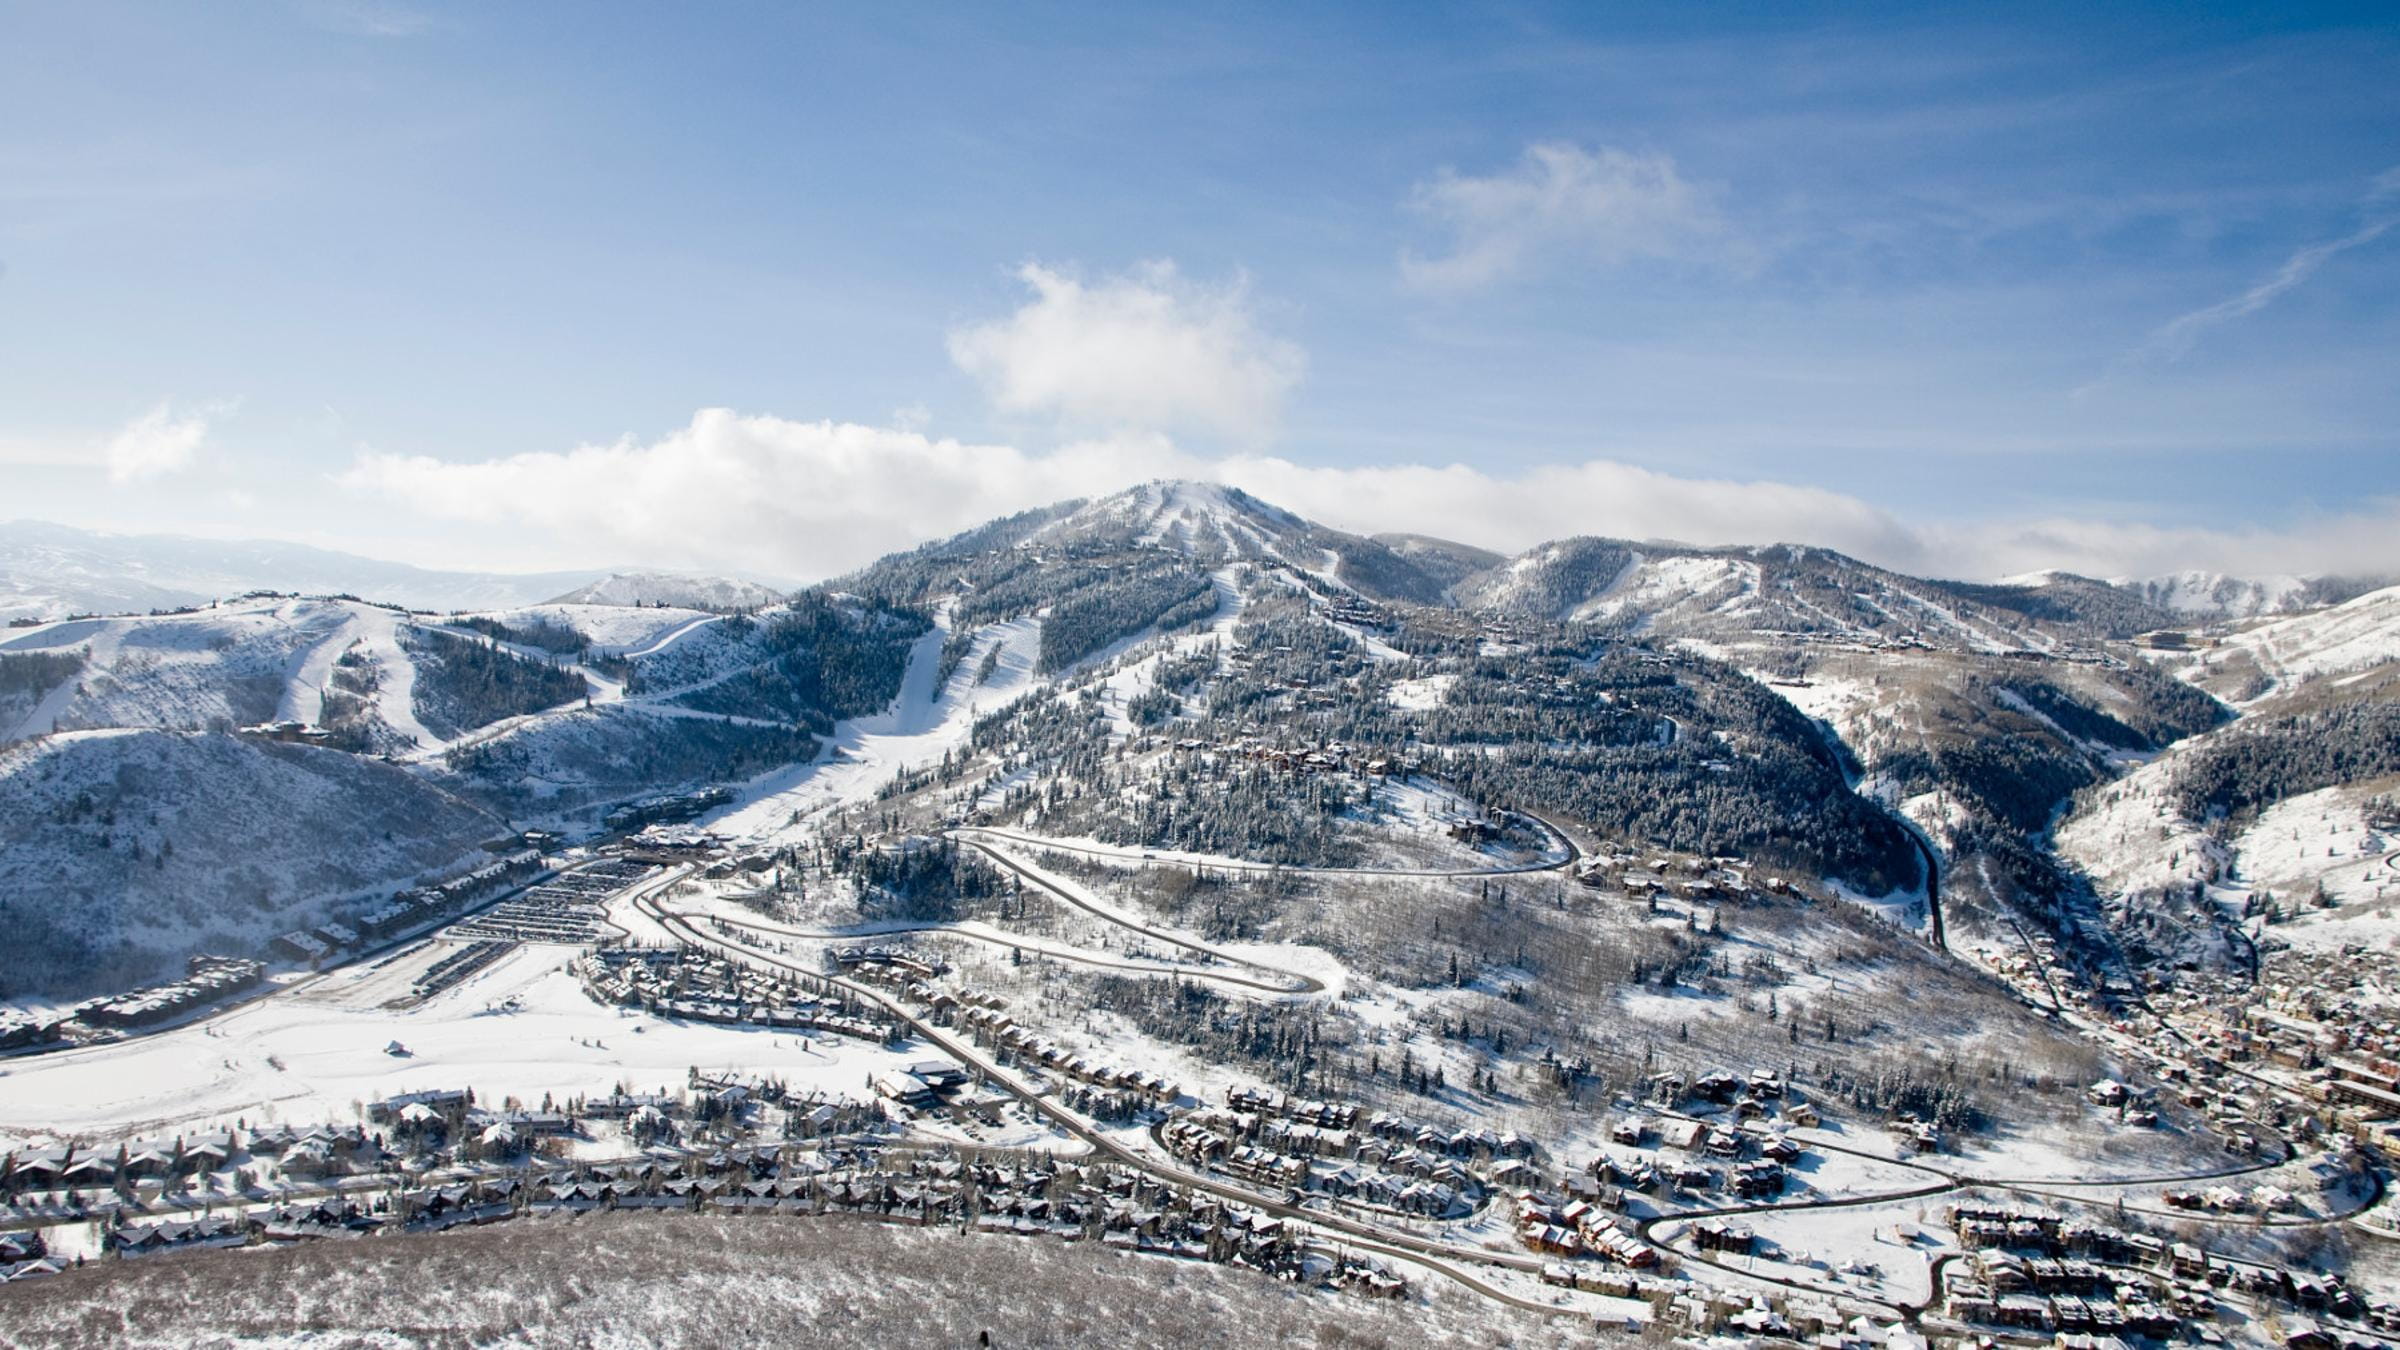 Bird's eye view of Deer Valley Resort in the winter